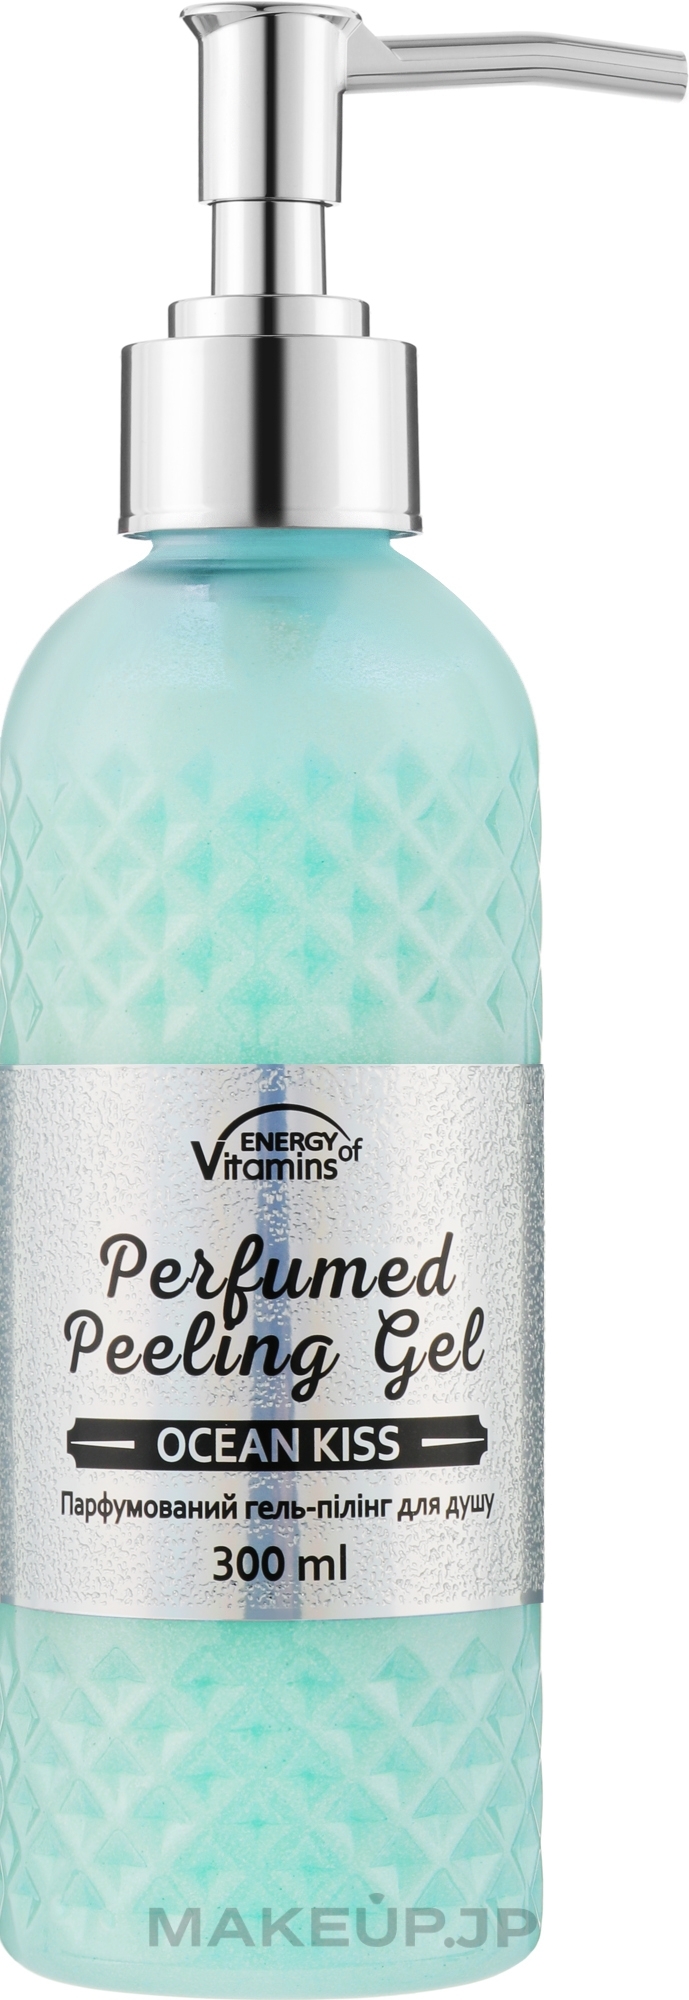 Perfumed Shower Peeling Gel - Energy of Vitamins Perfumed Peeling Gel Ocean Kiss — photo 300 ml